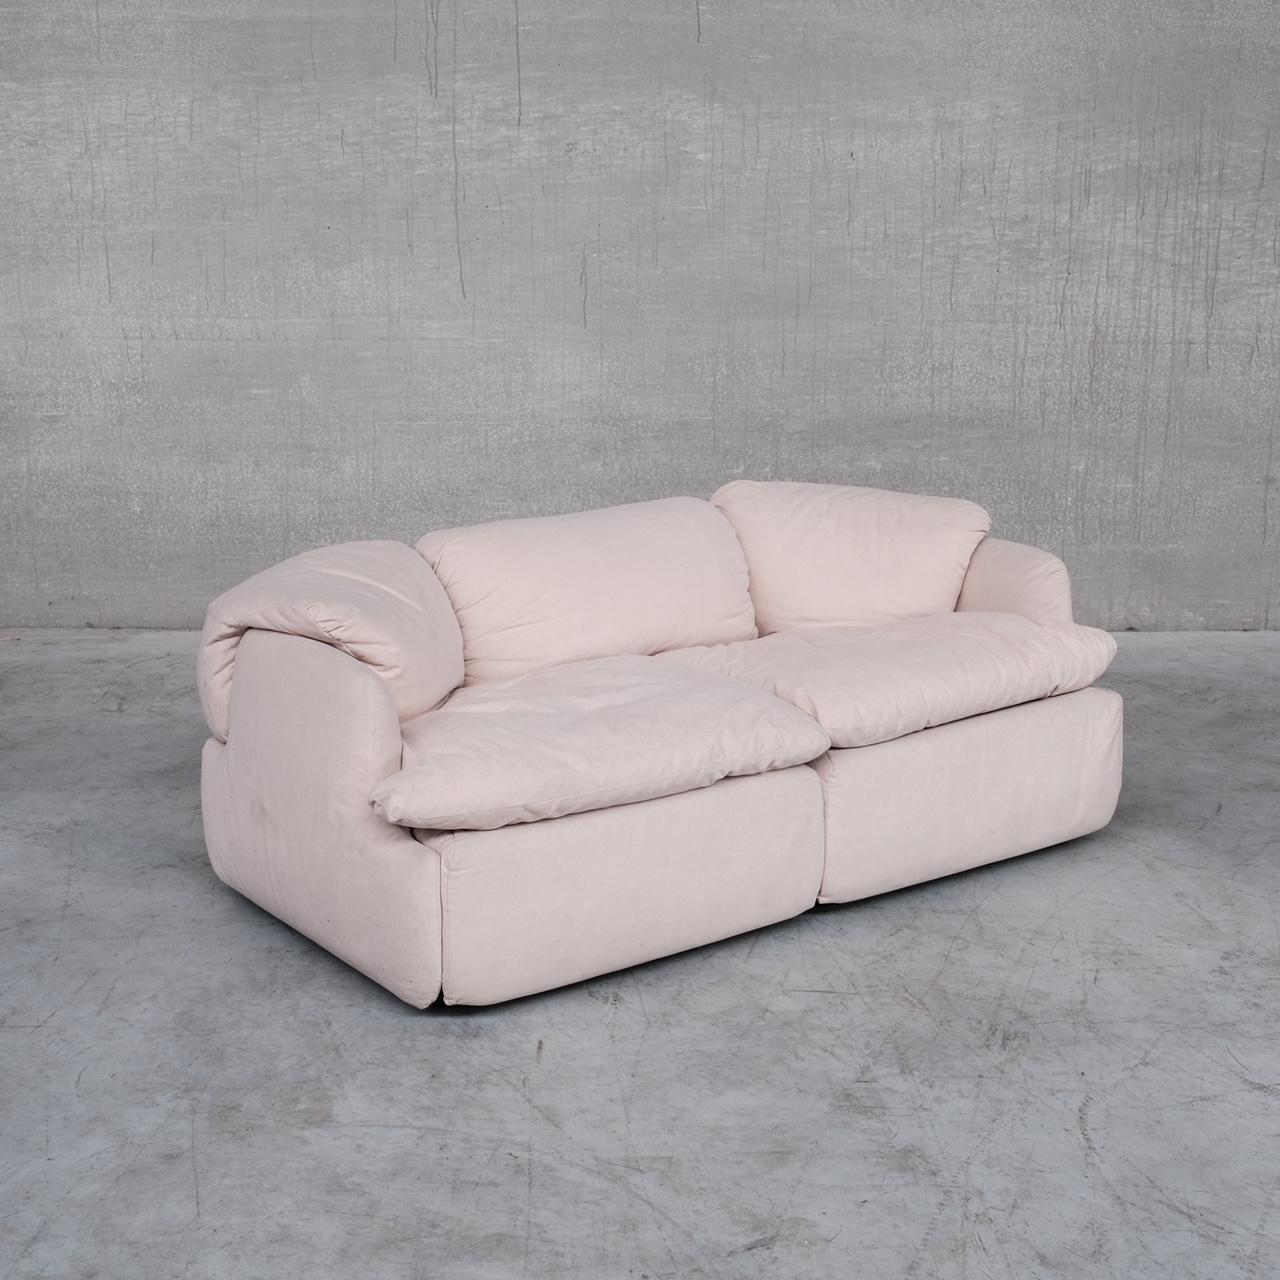 Alberto Rosselli Mid-Century 'Confidential' Two Seater Sofa for Saporiti For Sale 7